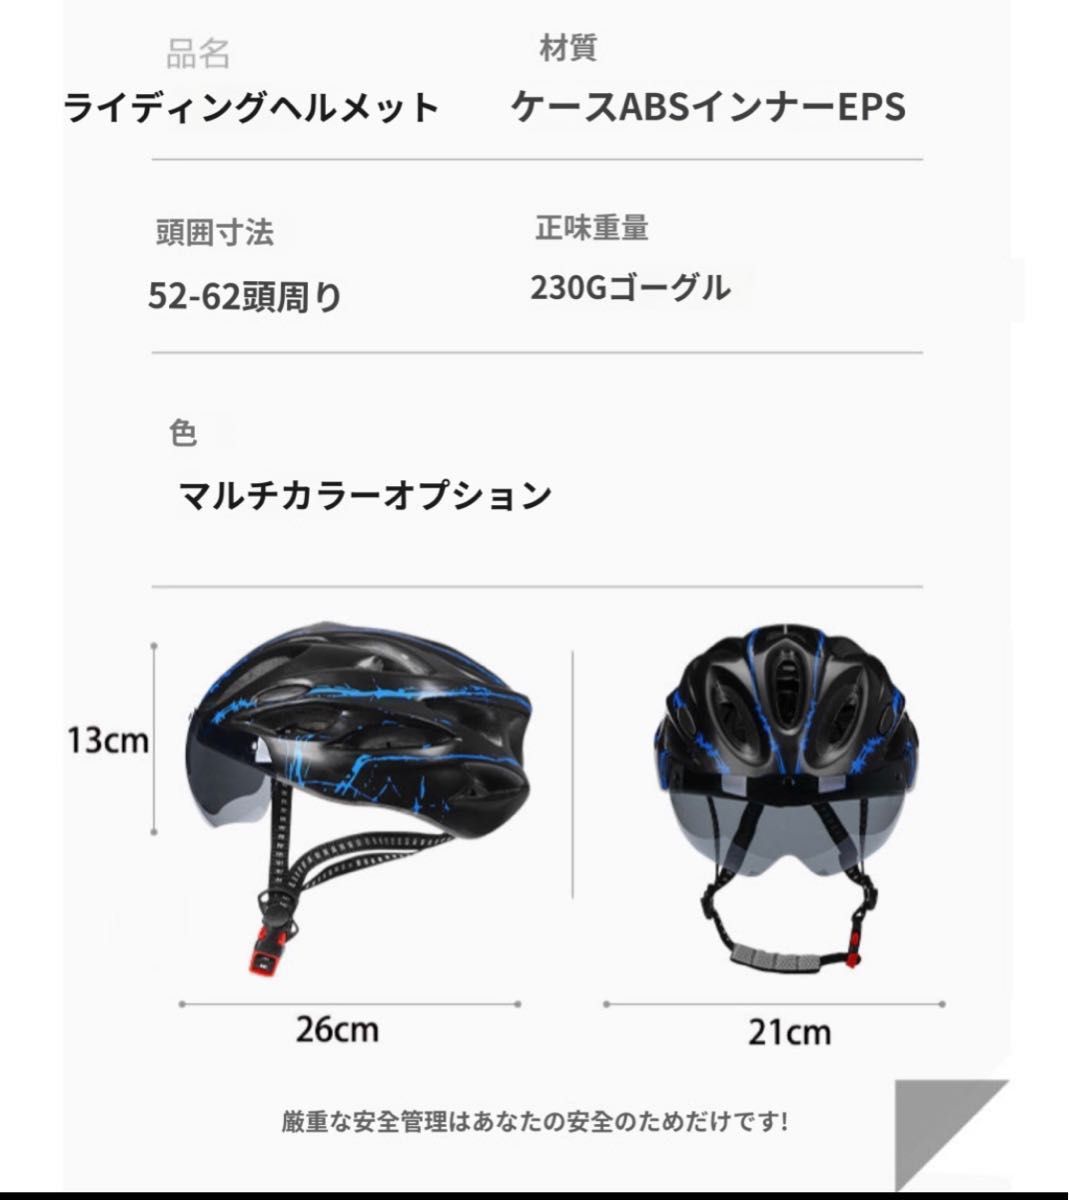 自転車ヘルメット 超軽量 男女大人用  サイズ調整可能、磁気吸引鏡レンズ